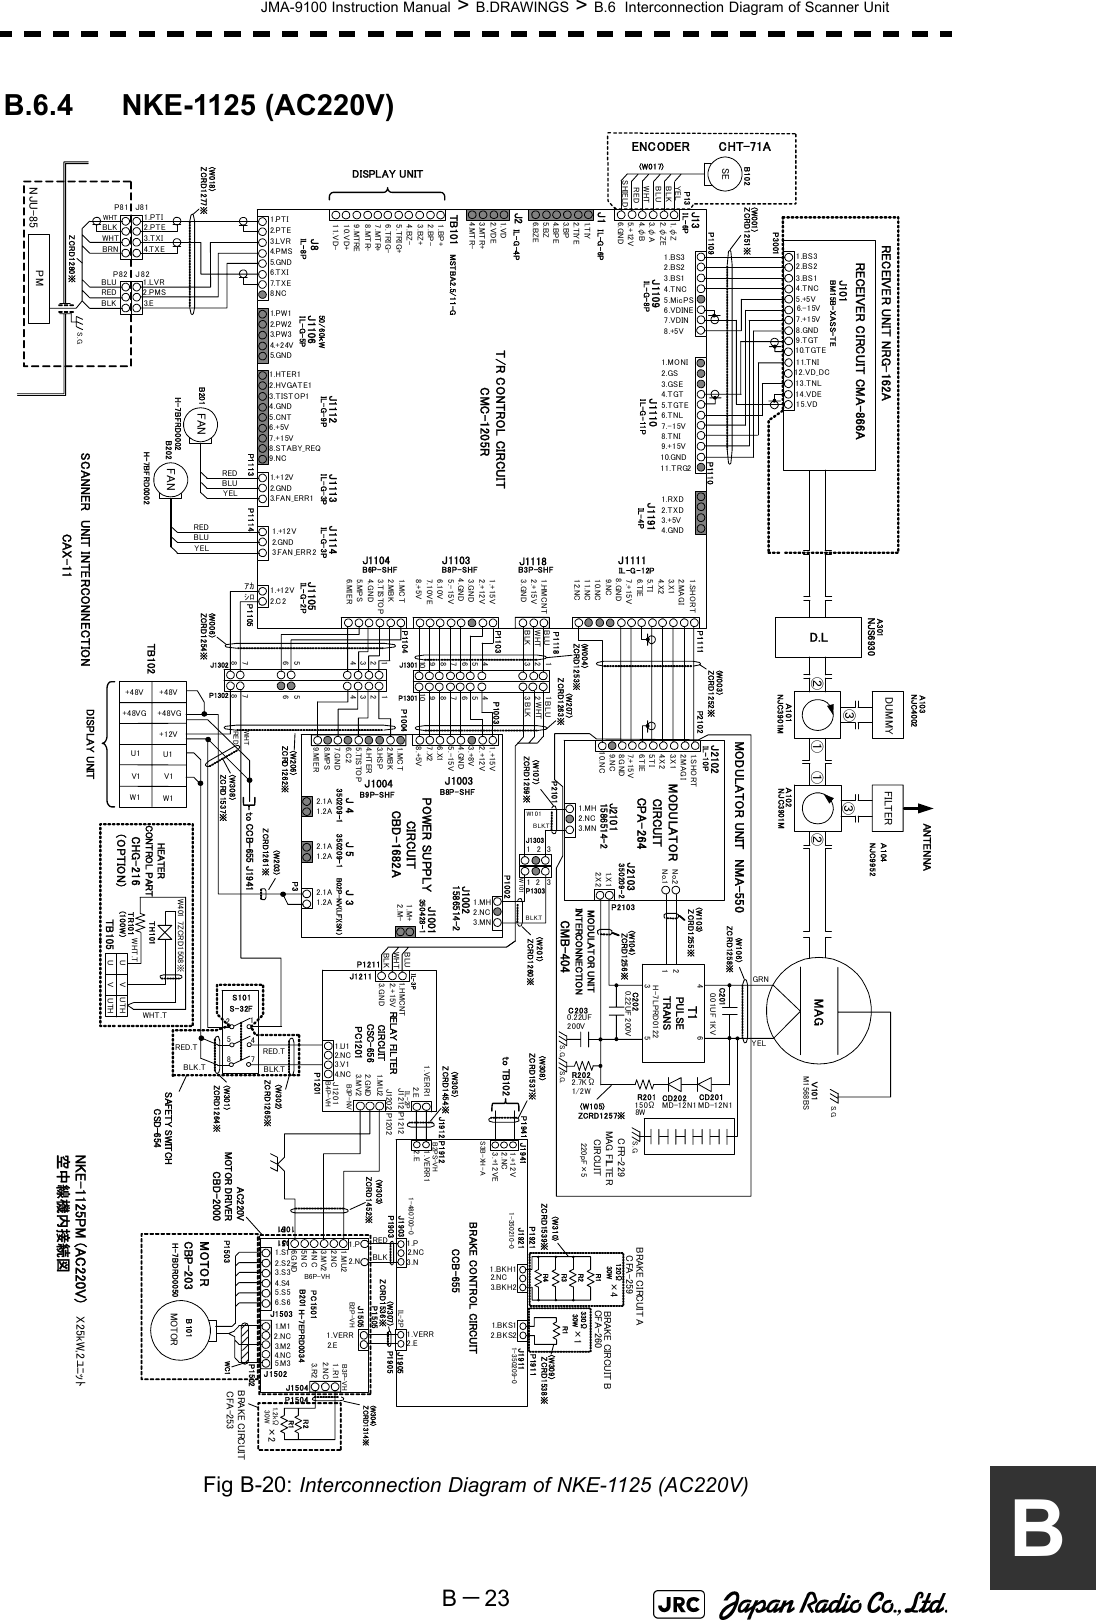 JMA-9100 Instruction Manual &gt; B.DRAWINGS &gt; B.6  Interconnection Diagram of Scanner UnitB－23BB.6.4 NKE-1125 (AC220V)Fig B-20: Interconnection Diagram of NKE-1125 (AC220V) NKE-1125PM (AC220V)空中線機内接続図14.VDE12.VD_DC15.VD9.TGT10.TGTE13.TNL11.TNI1.BS32.BS23.BS14.TNC5.+5V6.-15V7.+15VRECEIVER UNIT NRG-162ARECEIVER CIRCUIT CMA-866AJ101BM15B-XASS-TET/R CONTROL CIRCUITCMC-1205R1.MONI2.GS3.GSE4.TGT5.TGTE6.TNL7.-15V8.TNI9.+15V10.GND11.TRG21.BS32.BS23.BS14.TNC5.MicPS6.VDINE7.VDIN8.+5V1.RXD2.TXD3.+5V4.GND1.SHORT2.M AG I3. X 14. X 25. T I6. T IE7.+15V8.GND9.NC10.NC11.NC12.NC1.HMCNT2.+15V3.GND1.+15V2.+12V3.GND4.GND5.-15V6.10V7.10VE8.+5V1.MC T2.MBK3.TISTOP4.G ND5.MPS6. MI E R1. T IY2.TIYE3.BP4.BPE5.BZ6.BZE1.+12V2.GN D3.FAN_ERR11.HTER12.HVGATE13.TISTOP14.GND5.CNT6.+5V7.+15V8.STABY_REQ9.NC1.PW12.PW23.PW34.+24V5.GN D1.BP+2.BP-3.BZ+4.BZ-5.TRIG+6.TRIG-7.MTR+8.MTR-9.MTRE10.VD+11.VD-1.VD2.VDE3.MTR+4.MTR-J1118J1103J1104 J1111J1191J1110J1109TB101J8 J1106J1112 J1113IL -G - 1 2PIL-G-8P IL-G-11PB6P-SHFIL-G-9PMSTBA2.5/11-GIL-G-5PB3P-SHFIL-4PB8P-SHFIL-G-3PMAGPOWER SUPPLY CIRCUITCBD-1682A1.+15V2.+12V3.+8V4.GND5.-15V6.X17.X28.+5V1.MC T2.MBK3. HS P4. HT E R5.TISTOP6.C 27.GND8.MPS9. MI E R2.1A1.2A2.1A1.2A2.1A1.2A1.MH2.NC3.MN1.MH2.NC3.MN1. X 12. X 2No.2No.1214356FILTERJ1004 J1003J 5J 4 J 3J1001J1002J2102J2101J2103ANTENNA1. SH O R T2.MA G I3.X14.X25.TI6.TIE7.+15VB9P-SHF B8P-SHF1586514-2350209-1IL-10P350209-2350209-1350428-1MODULATOR CIRCUITCPA-264MODULATOR UNIT IN T ERCO N NECTI ONCMB-404D.L①②③①②③GRNYELC2010.01UF 1KVC2020.22UF 200VR202 2.7KΩ1/2WC2030.22UF200VT1 R201150Ω8WH-7LPRD0122CD202 CD201MD-12N1MD-12N1NJC3901MＡ101 Ａ102P3001P1109 P1110P1104P1103 P1003P1004P1111PULSE TRANSP3P2103DUMMYA103(W001)(W003)P10021.+12V2.GND3.FAN_ERR2J1114IL-G-3P1.+12V2.C2J1105IL-G-2PP1105MODULATOR UNIT NMA-550SCANNER UNIT INTERCONNECTIONCAX-11(W106)(W103)(W104)(W105)ZCRD1255※ZCRD1257※J1IL-G-6PJ2IL- G -4PZCRD1256※A301NJS6930ZCRD1252※ZCRD1258※ZCRD1251※ZCRD1253※(W004)(W207)ZCRD1263※ZCRD1254※1.φZ2.φZE3.φ A4.φB5.+12V6.GNDJ13IL-6P50/60ｋWｱｶｼﾛDISPLAY UNITP2101P21028.GND1.M+2.M-1586514-2NJC40029.NC10.NCB02P-NV(LF)(SN ）S. G.S.G.S.G.8.G ND1234567891012345678910WHTBLKP1118BLUWHTBLKBLUP1301J1301(W006)1234123456567878SEYELBLKBLUWHTREDSHIELDB102ENCODER CHT-71AP13(W017)FANREDBLUYELB201B202 FANREDBLUYELP1113 P1114REDWHTZCRD1262※(W206)12BLK.T21 33BLK.T(W107)ZCRD1259※J1303P1303P1302J1302(W201)ZCRD1260※W101W1011.PTI2.P T E3.LVR4.PMS5.GN D6.TXI7. T X E8.NCIL-8P1.PTI2.PTE1.LVR2.PMS3.E3.TXI4.TXEJ82J81PMP81P82WHTBLKBLUREDBLKWHTBRNNJU-85ZCRD1280※(W018)ZCRD1277※X25kW,2ﾕﾆｯﾄS.G.NJC3901MH-7BFRD0002H-7BFRD0002M1568BSＶ101NJC9952Ａ104CFR-229MAG FILTER CIRCUITS.G.220pF×5HEATER CONTROL PARTCHG-216（OPTION）+48V+48VGU1V1W1U1W1V1DISPLAY UNITTB102+48V+48VG(W301)S101S-32F217548RED.T RED.TBLK.TBLK.TZCRD1264※(W302)ZC RD 12 65※+12VZCRD1261※(W203)SAFETY SWITCHCSD-654to CCB-655 J1941ZCRD1537※(W308)UVUTHUVUTHTH101W401 7ZCRD1508※TR101（100W）TB105WHT.TWHT.TWHTBLKBLUZCRD1454※(W305)P1212BRAKE CIRCUITCFA-253J15011.VERR2.EH-7EPRD0034B201J1505PC1501P1501B2P-VHP1505P1201RELAY  FIL TER CIRCUITCSC-656PC1201IL-3P1.HMCNT2.+15V3.G NDP1211J12121.VERR12.EJ1201J12111.U13.V12.NC4.NCB4P-VHIL-2P1.VERR12.E1.VERR2.E1.P2.NC3.N1.P2.N1.BKH13. BK H 21.B K S12.BKS21.+12V2.NC3.+12VEP1941 J1941J1903P1903J1905P1905J1912 P1912BRAKE CONTROL CIRCUITCCB-655P1502J1921P1921J1911P1911to TB102REDBLKIL-2PB2PS-VHS3B-XH -A1-350210-0 1-350209-01-480700-0ZC RD 15 37※(W308)ZCRD1536※(W307)ZCRD1452※(W303)WC1ZCRD1538※(W309)ZCRD1539※(W310)CBP-203H-7BDRD00502.NC4.NC1.S12.S23.S34.S45.S56.S6J1502J15033.M21.M15.M3P1503MOTORMOTORB101BRAKE CIRCUIT BCFA-260BRAKE CIRCUIT ACFA-259R1R2R3R4R1120Ω30W330Ω30W×4×12.NC3.MV21.MU22.NC4.NC5.NC6.G N DB6P-VH(W304)ZCRD1314※R1R2P15041.R13.R2J1504B3P-VH2.NCP12021.MU23.MV2J12022.GNDB3P-NV1.2kΩ30W×2AC220V MOTOR DRIVERCBD-2000